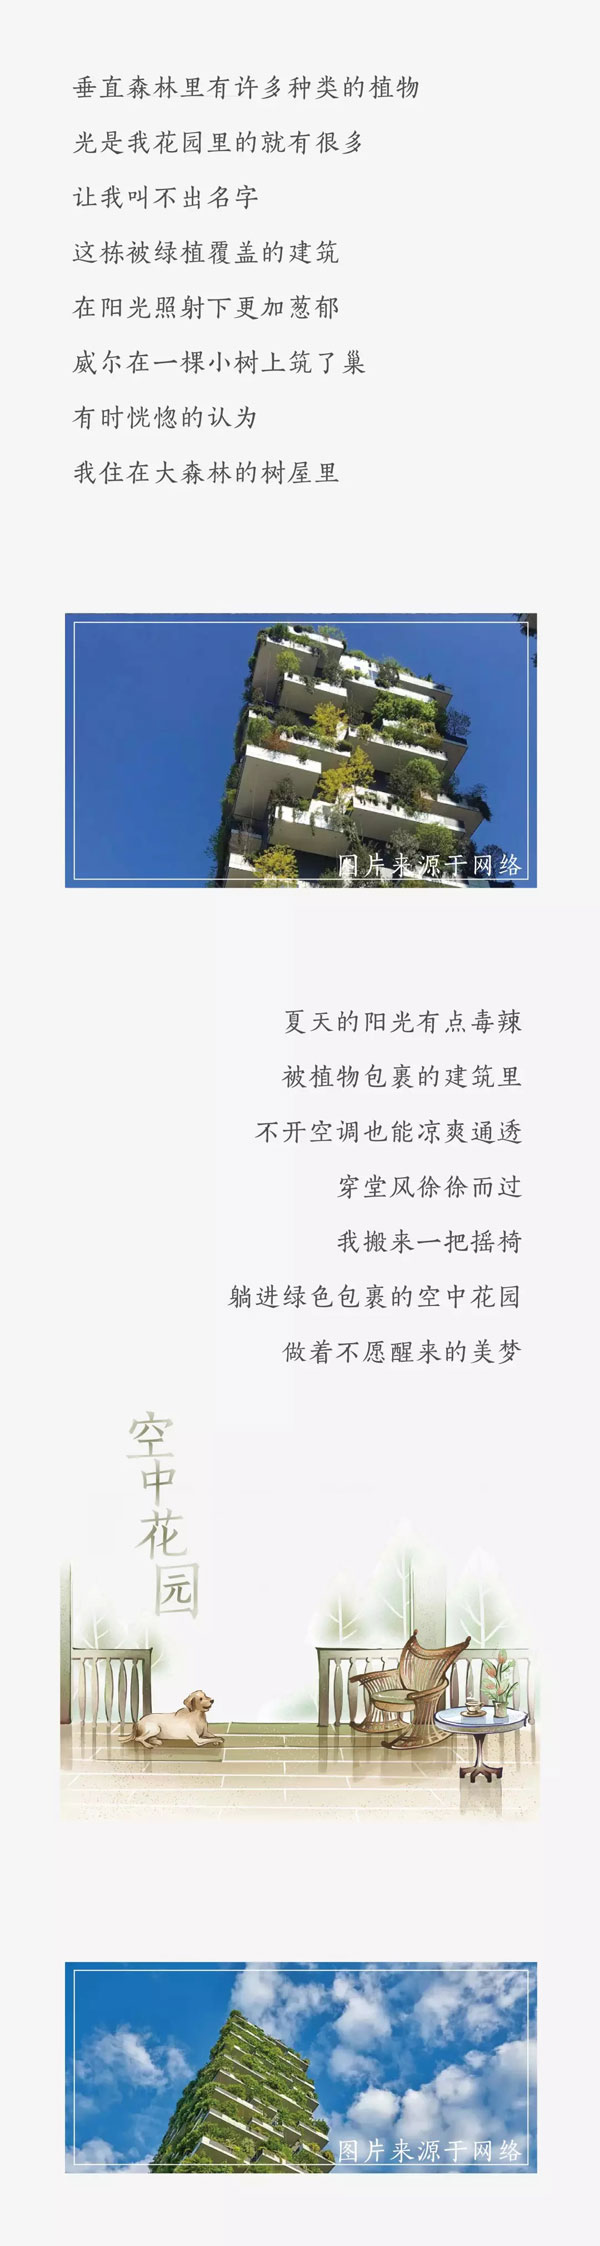 中国铁建·贵安花语墅125-260㎡空中森林叠院 敬请期待-中国网地产